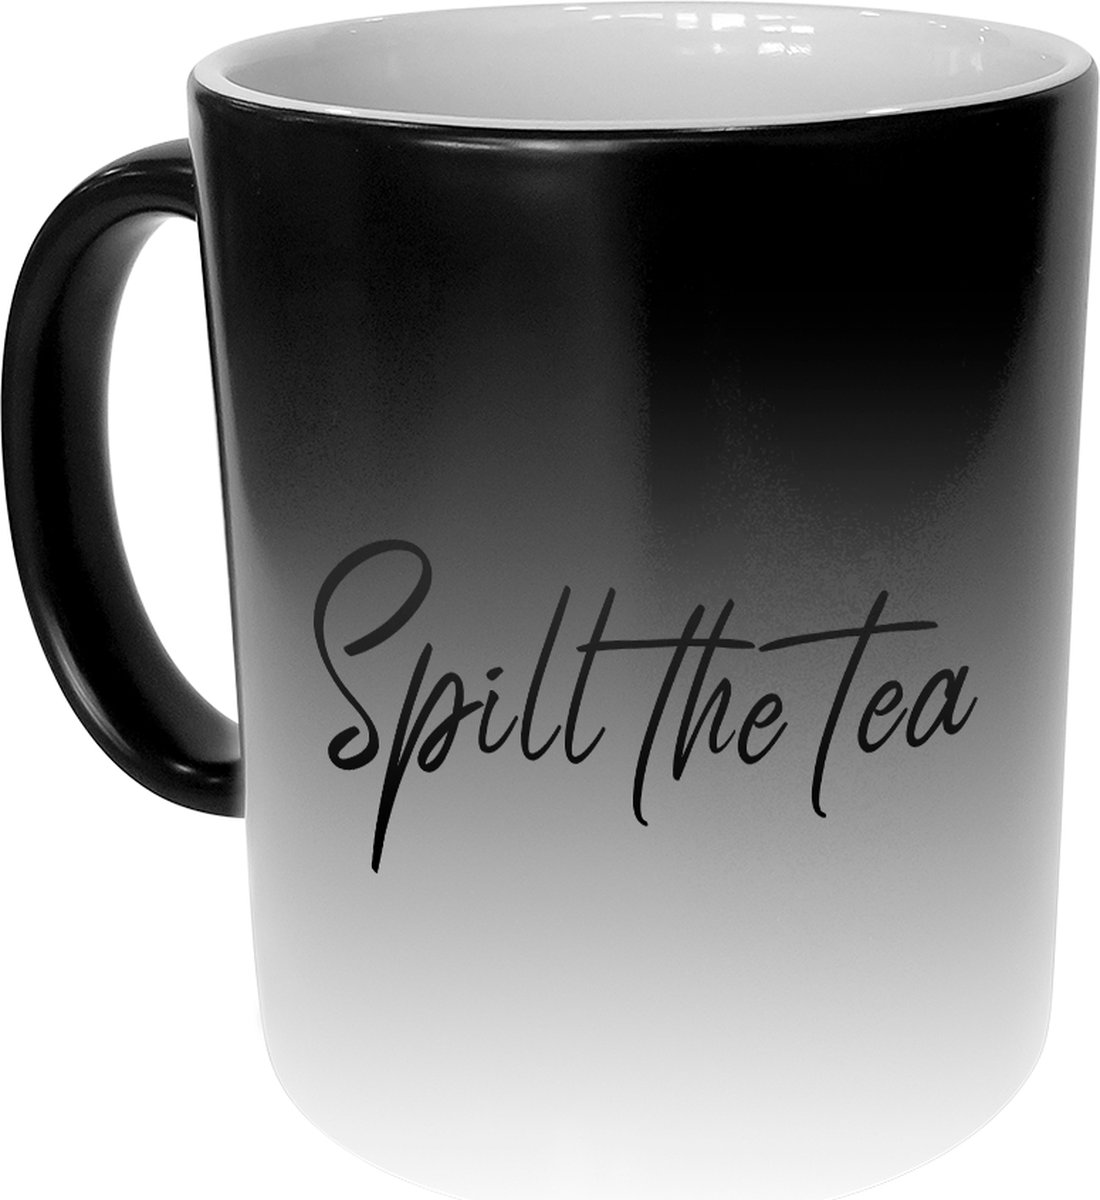 Magische Mok - Spill The Tea